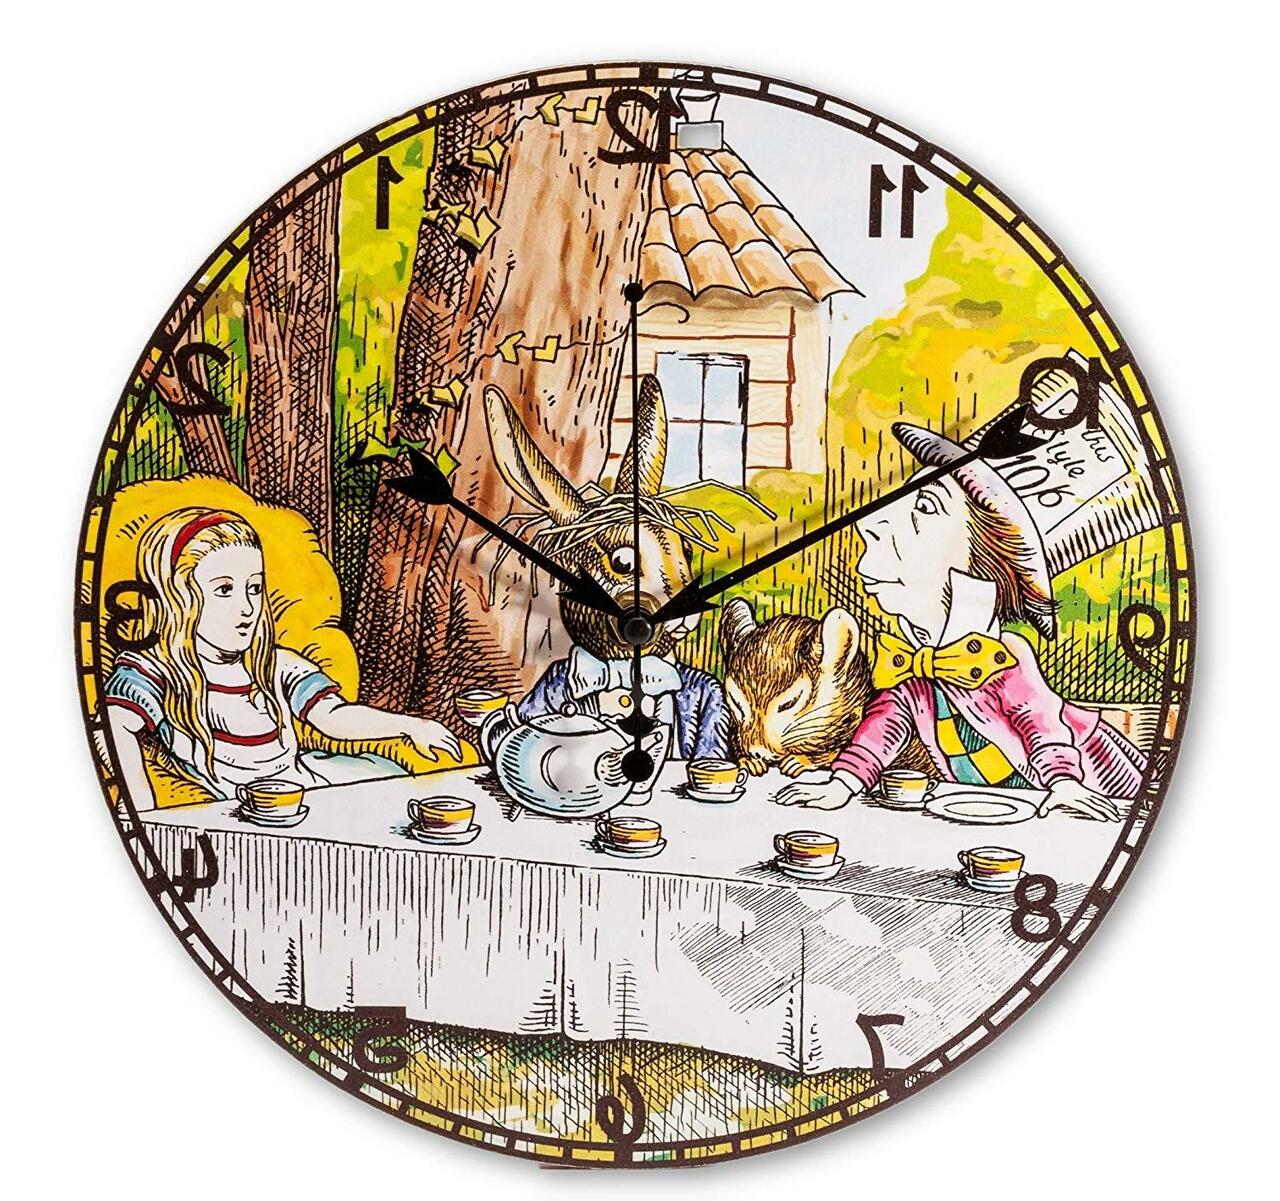 Часы алиса отзывы. Часы Алиса в стране чудес. Часы из Алисы в стране чудес. Часы Alisa in Wonderland. Часы Алиса в стране чудес картинки.